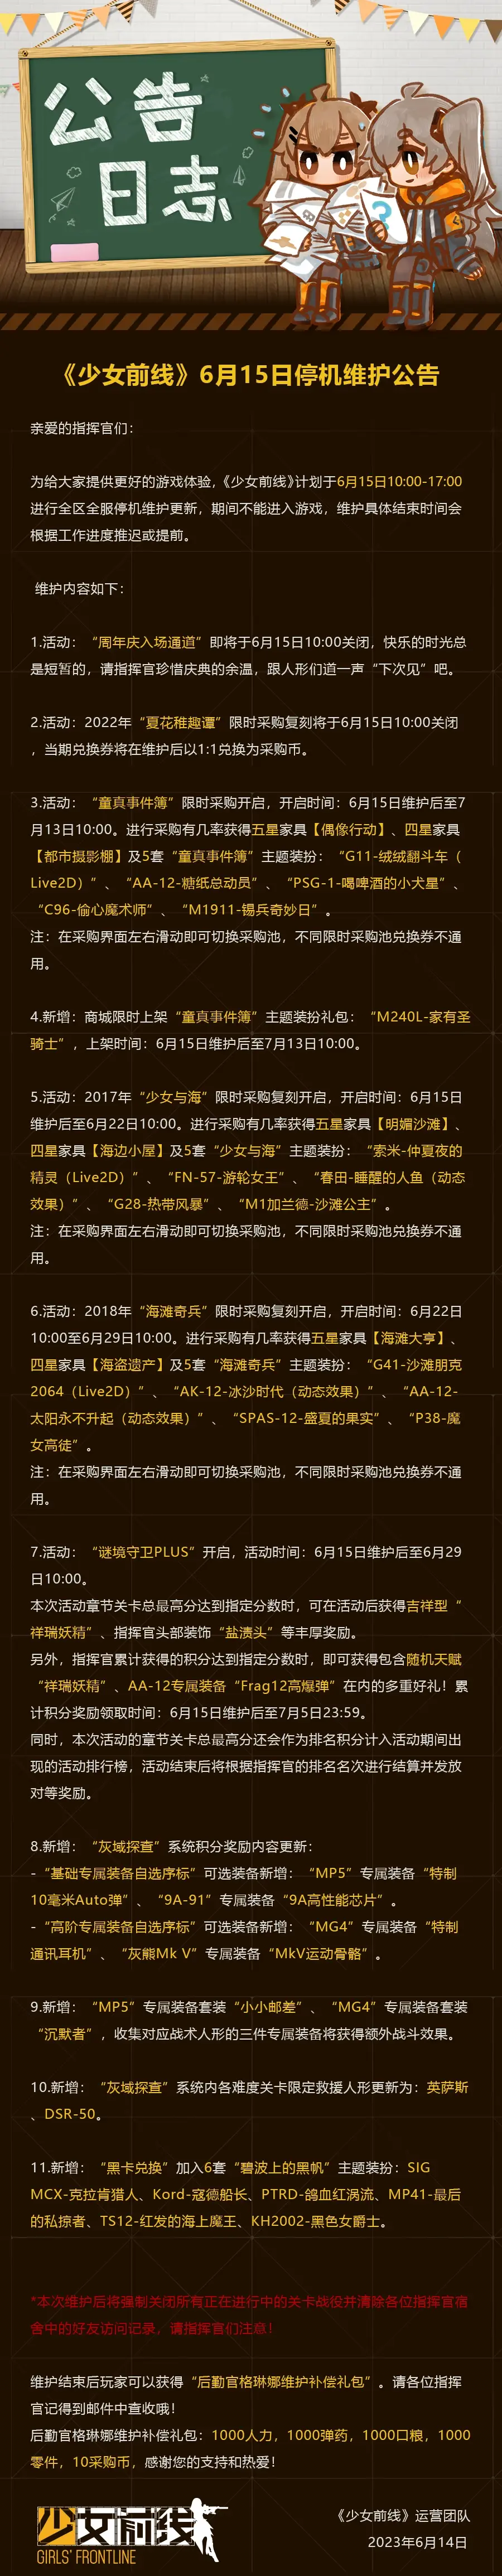 《少女前线》6月15日更新公告6月15日更新内容一览